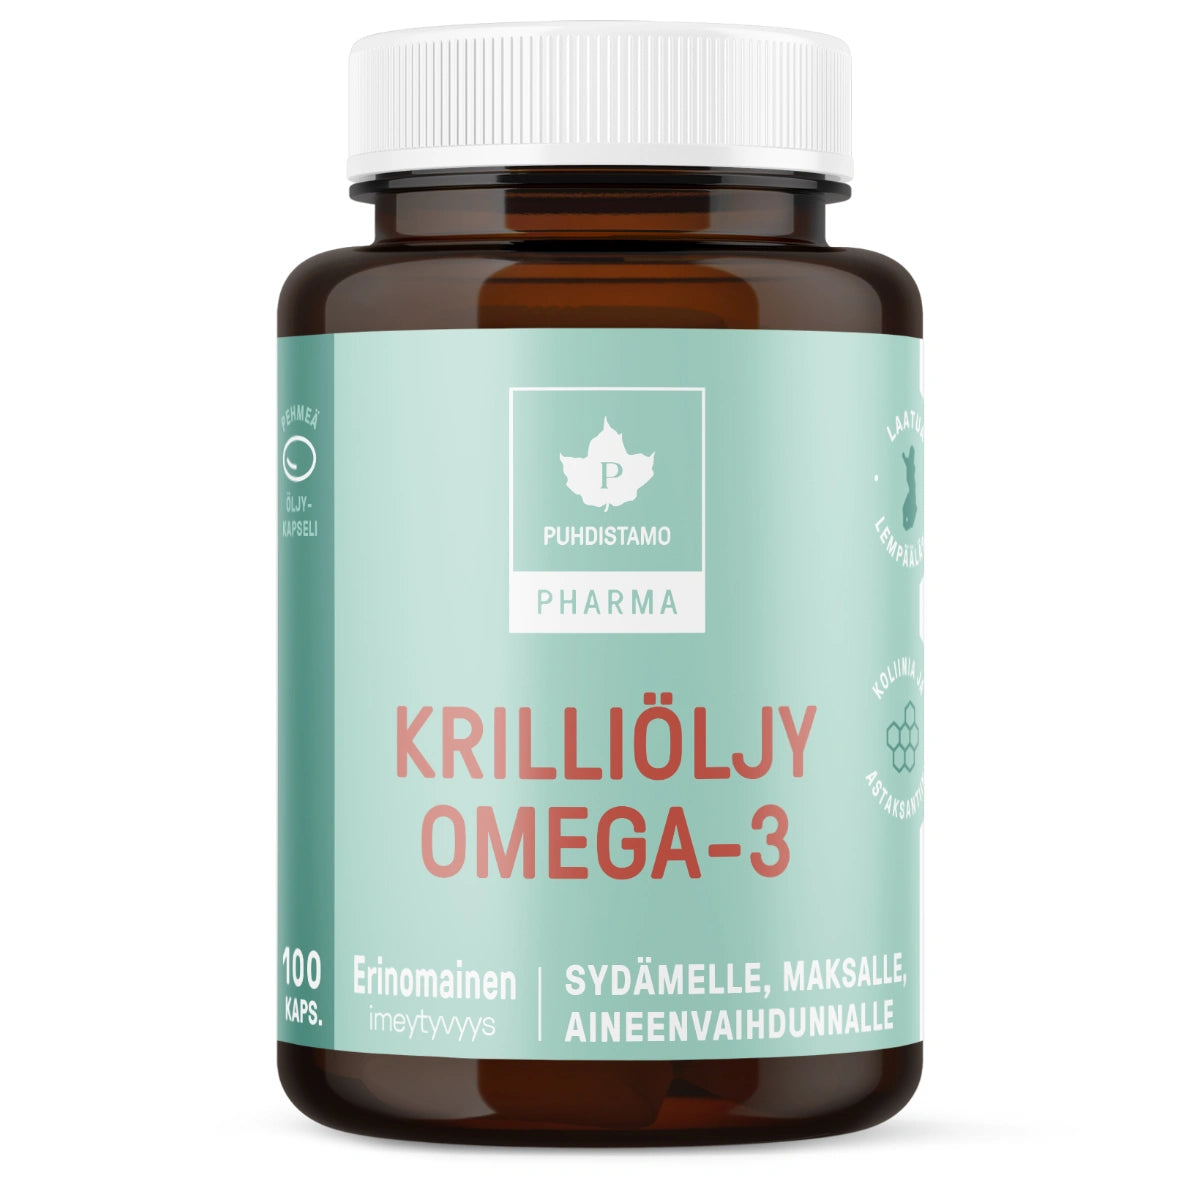 PUHDISTAMO Pharma Krilliöljy Omega-3 kapseli 100 kpl valmistettu puhtaasta krilliöljystä